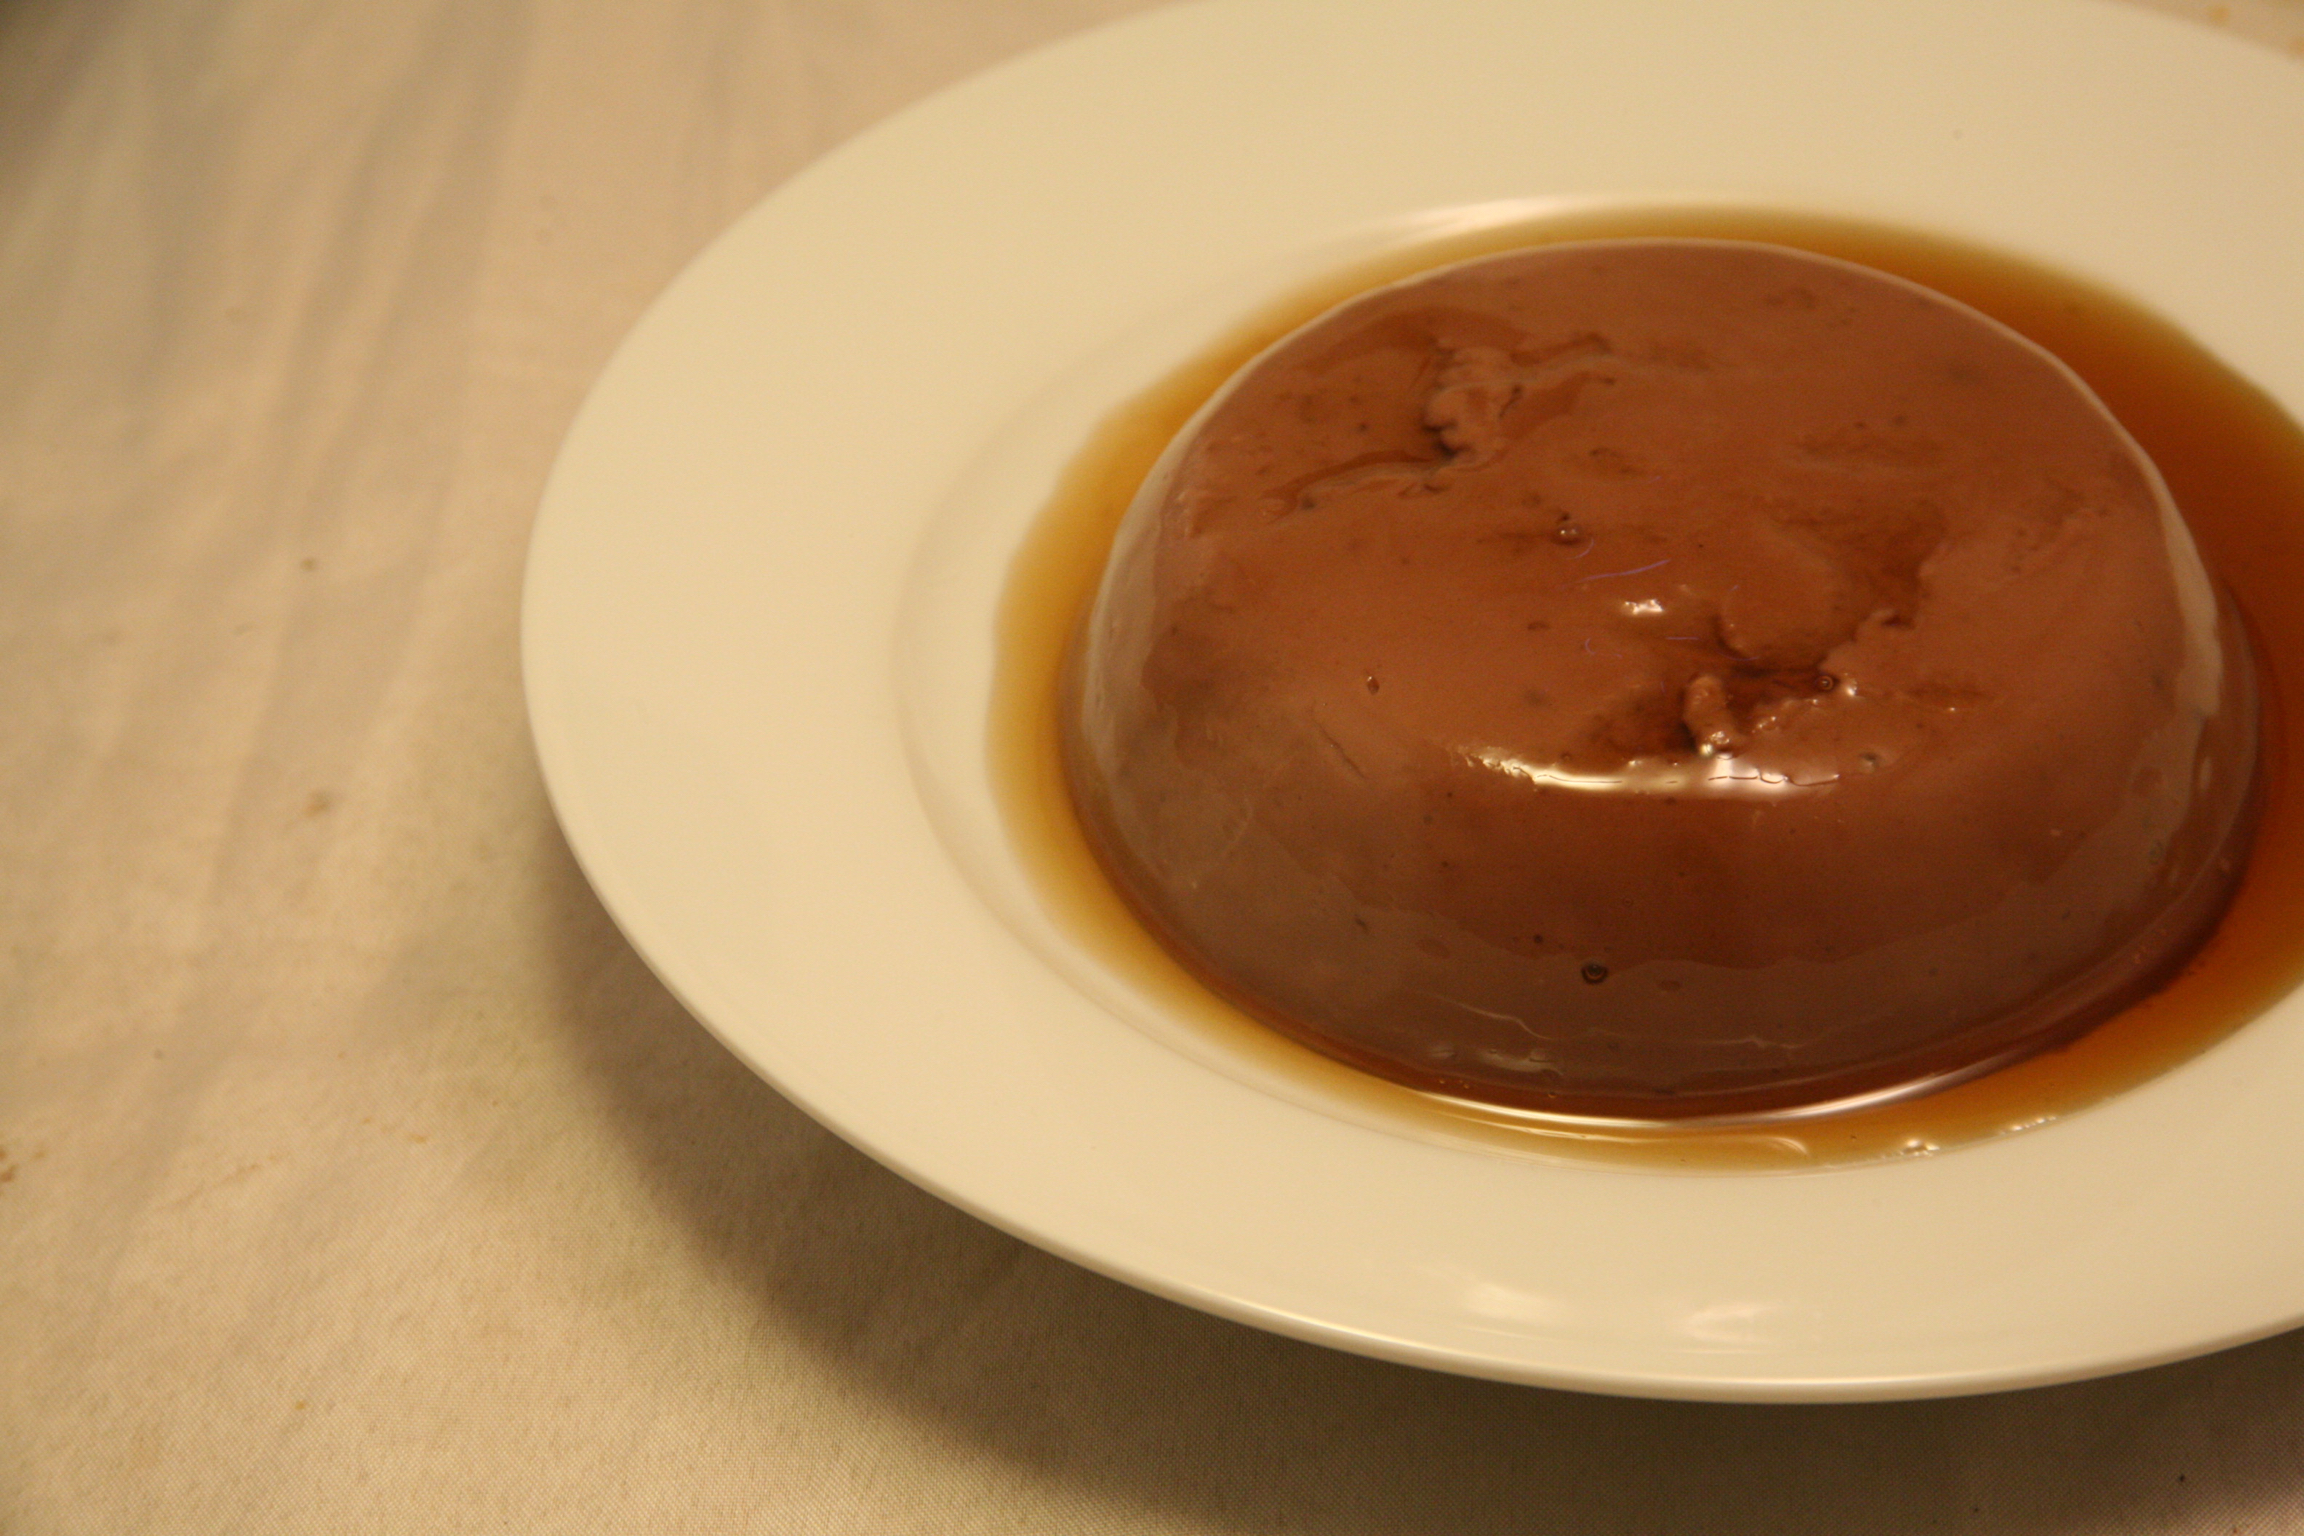 Schokoladen-Pudding mit Ahorn-Sirup